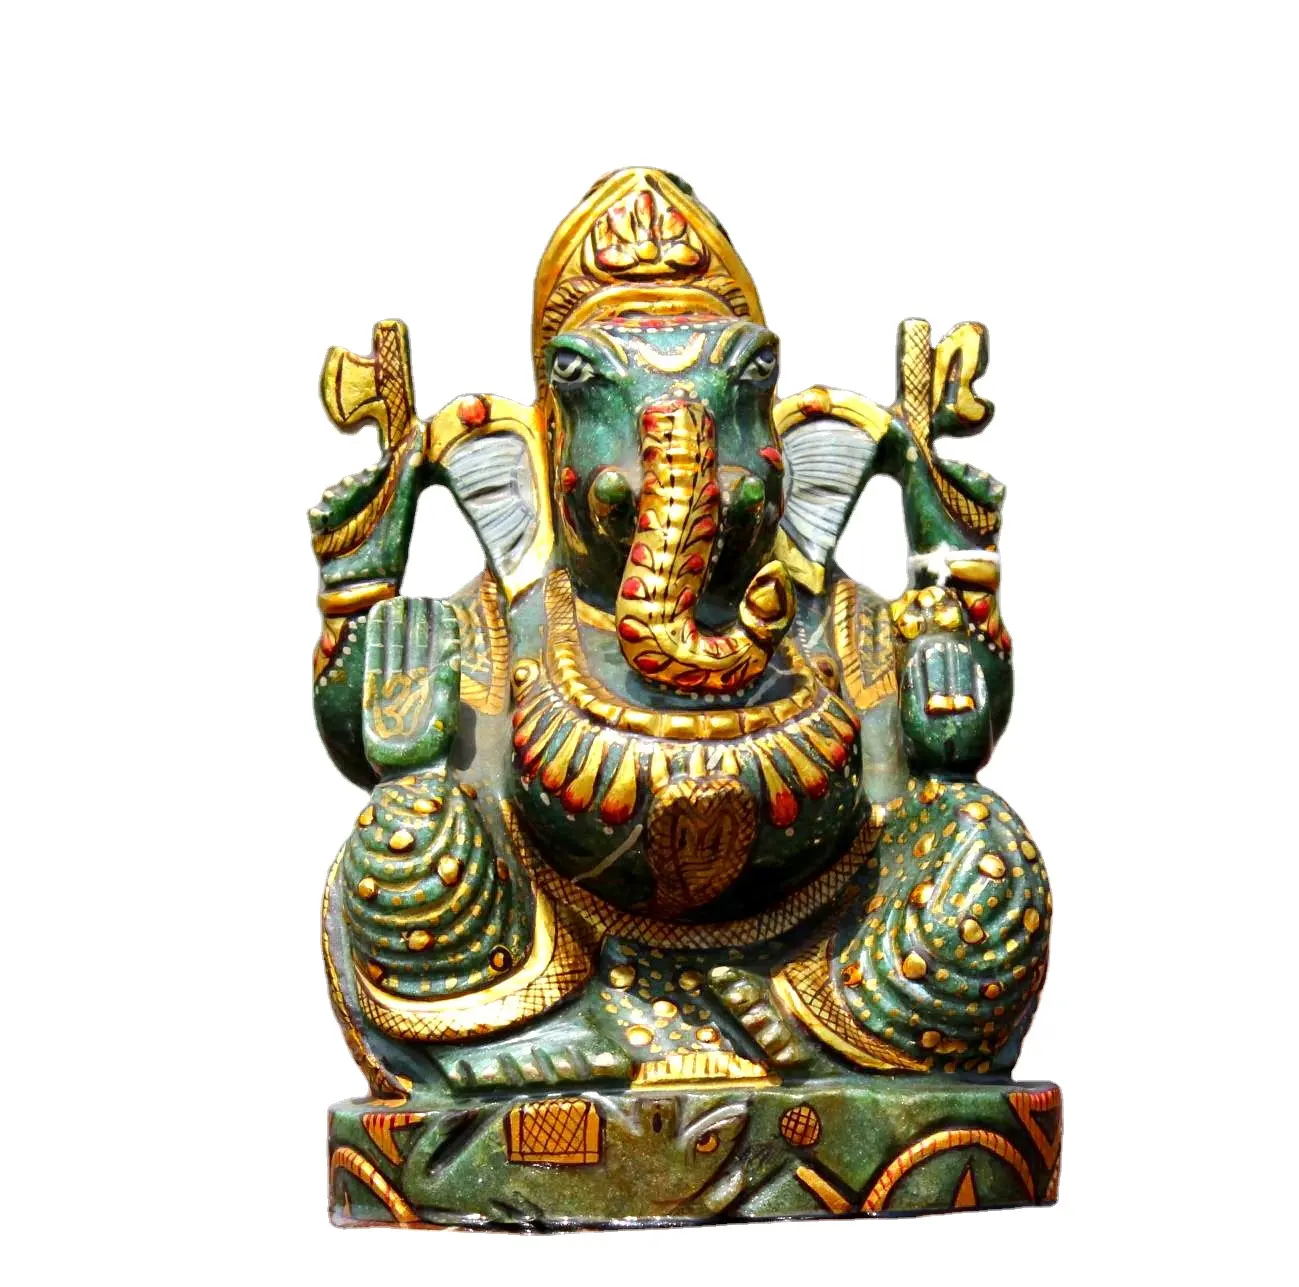 Acquista cristallo curativo Mini statua di Ganesha scultura figurina pietra curativa di cristallo Made in India acquista prezzi all'ingrosso